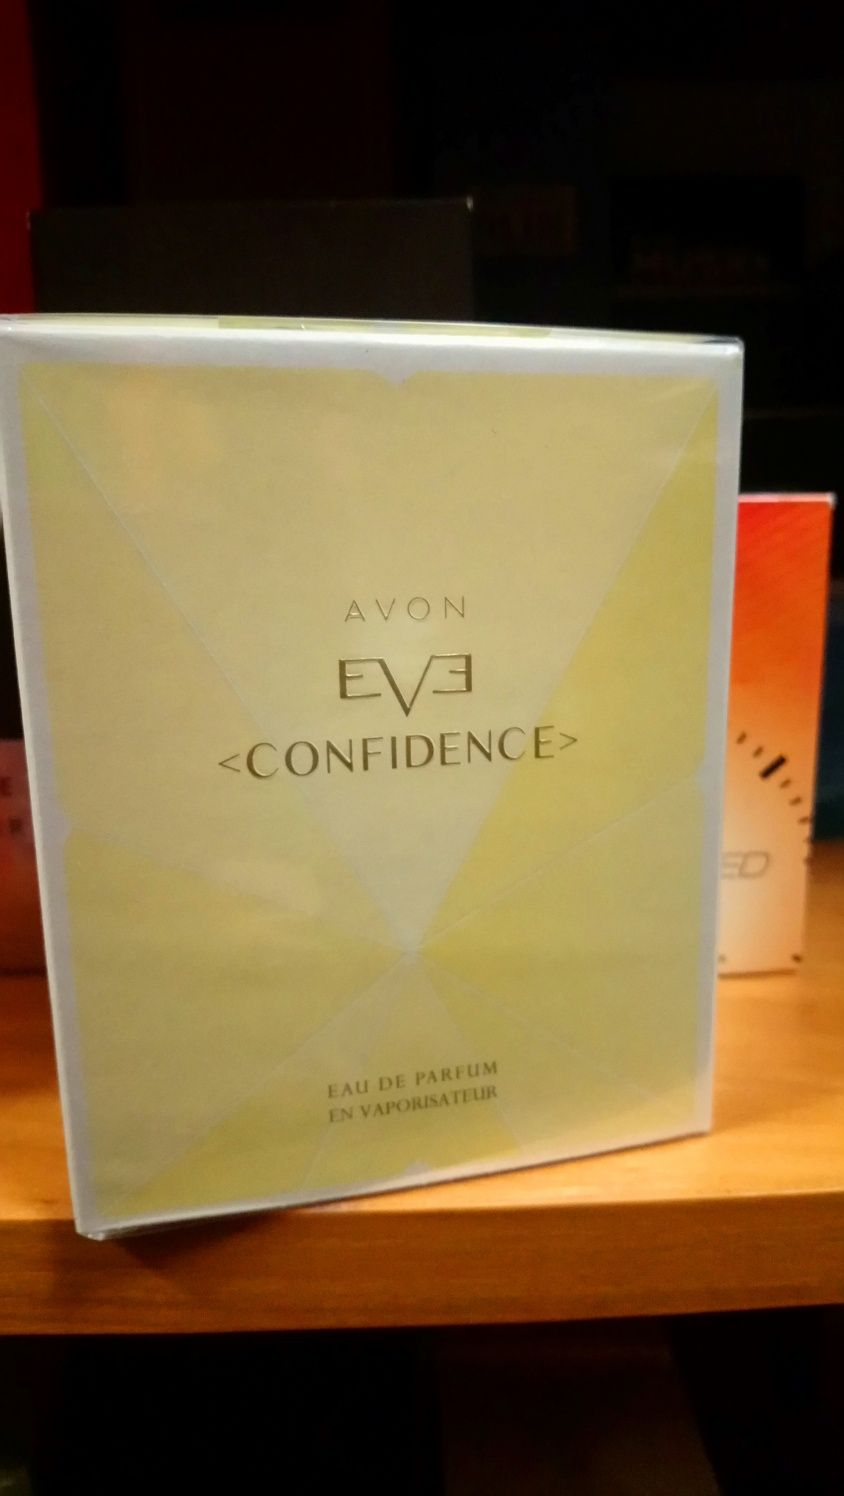 Eve Confidence Avon 50 ml